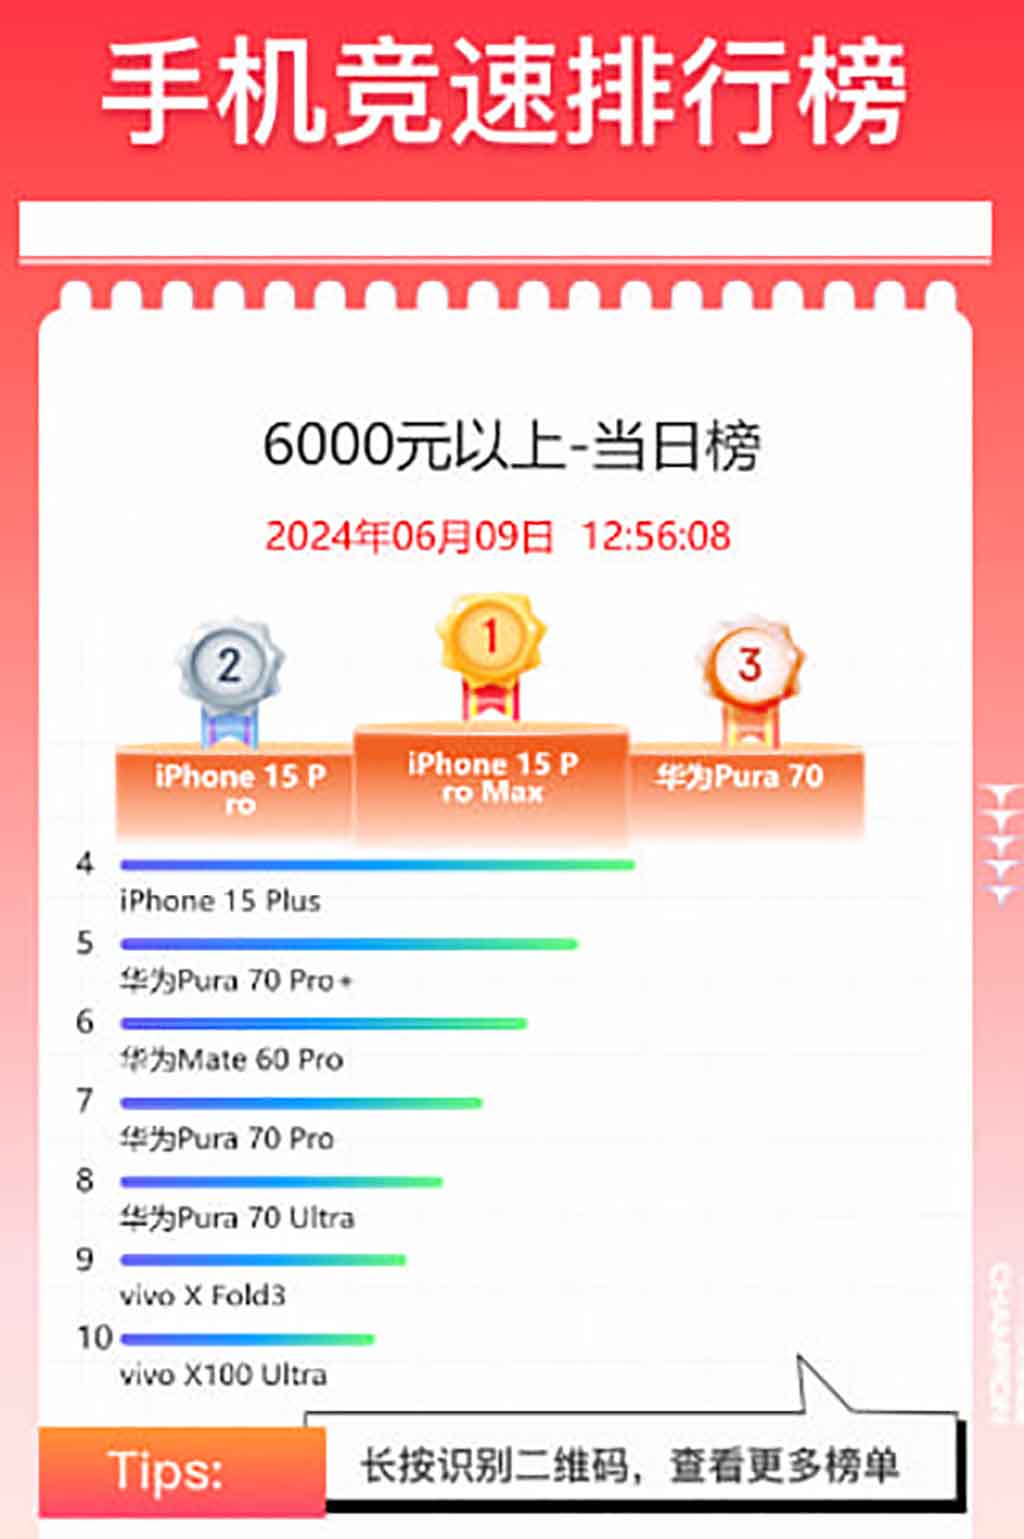 Huawei 618 ventes de smartphones chinois